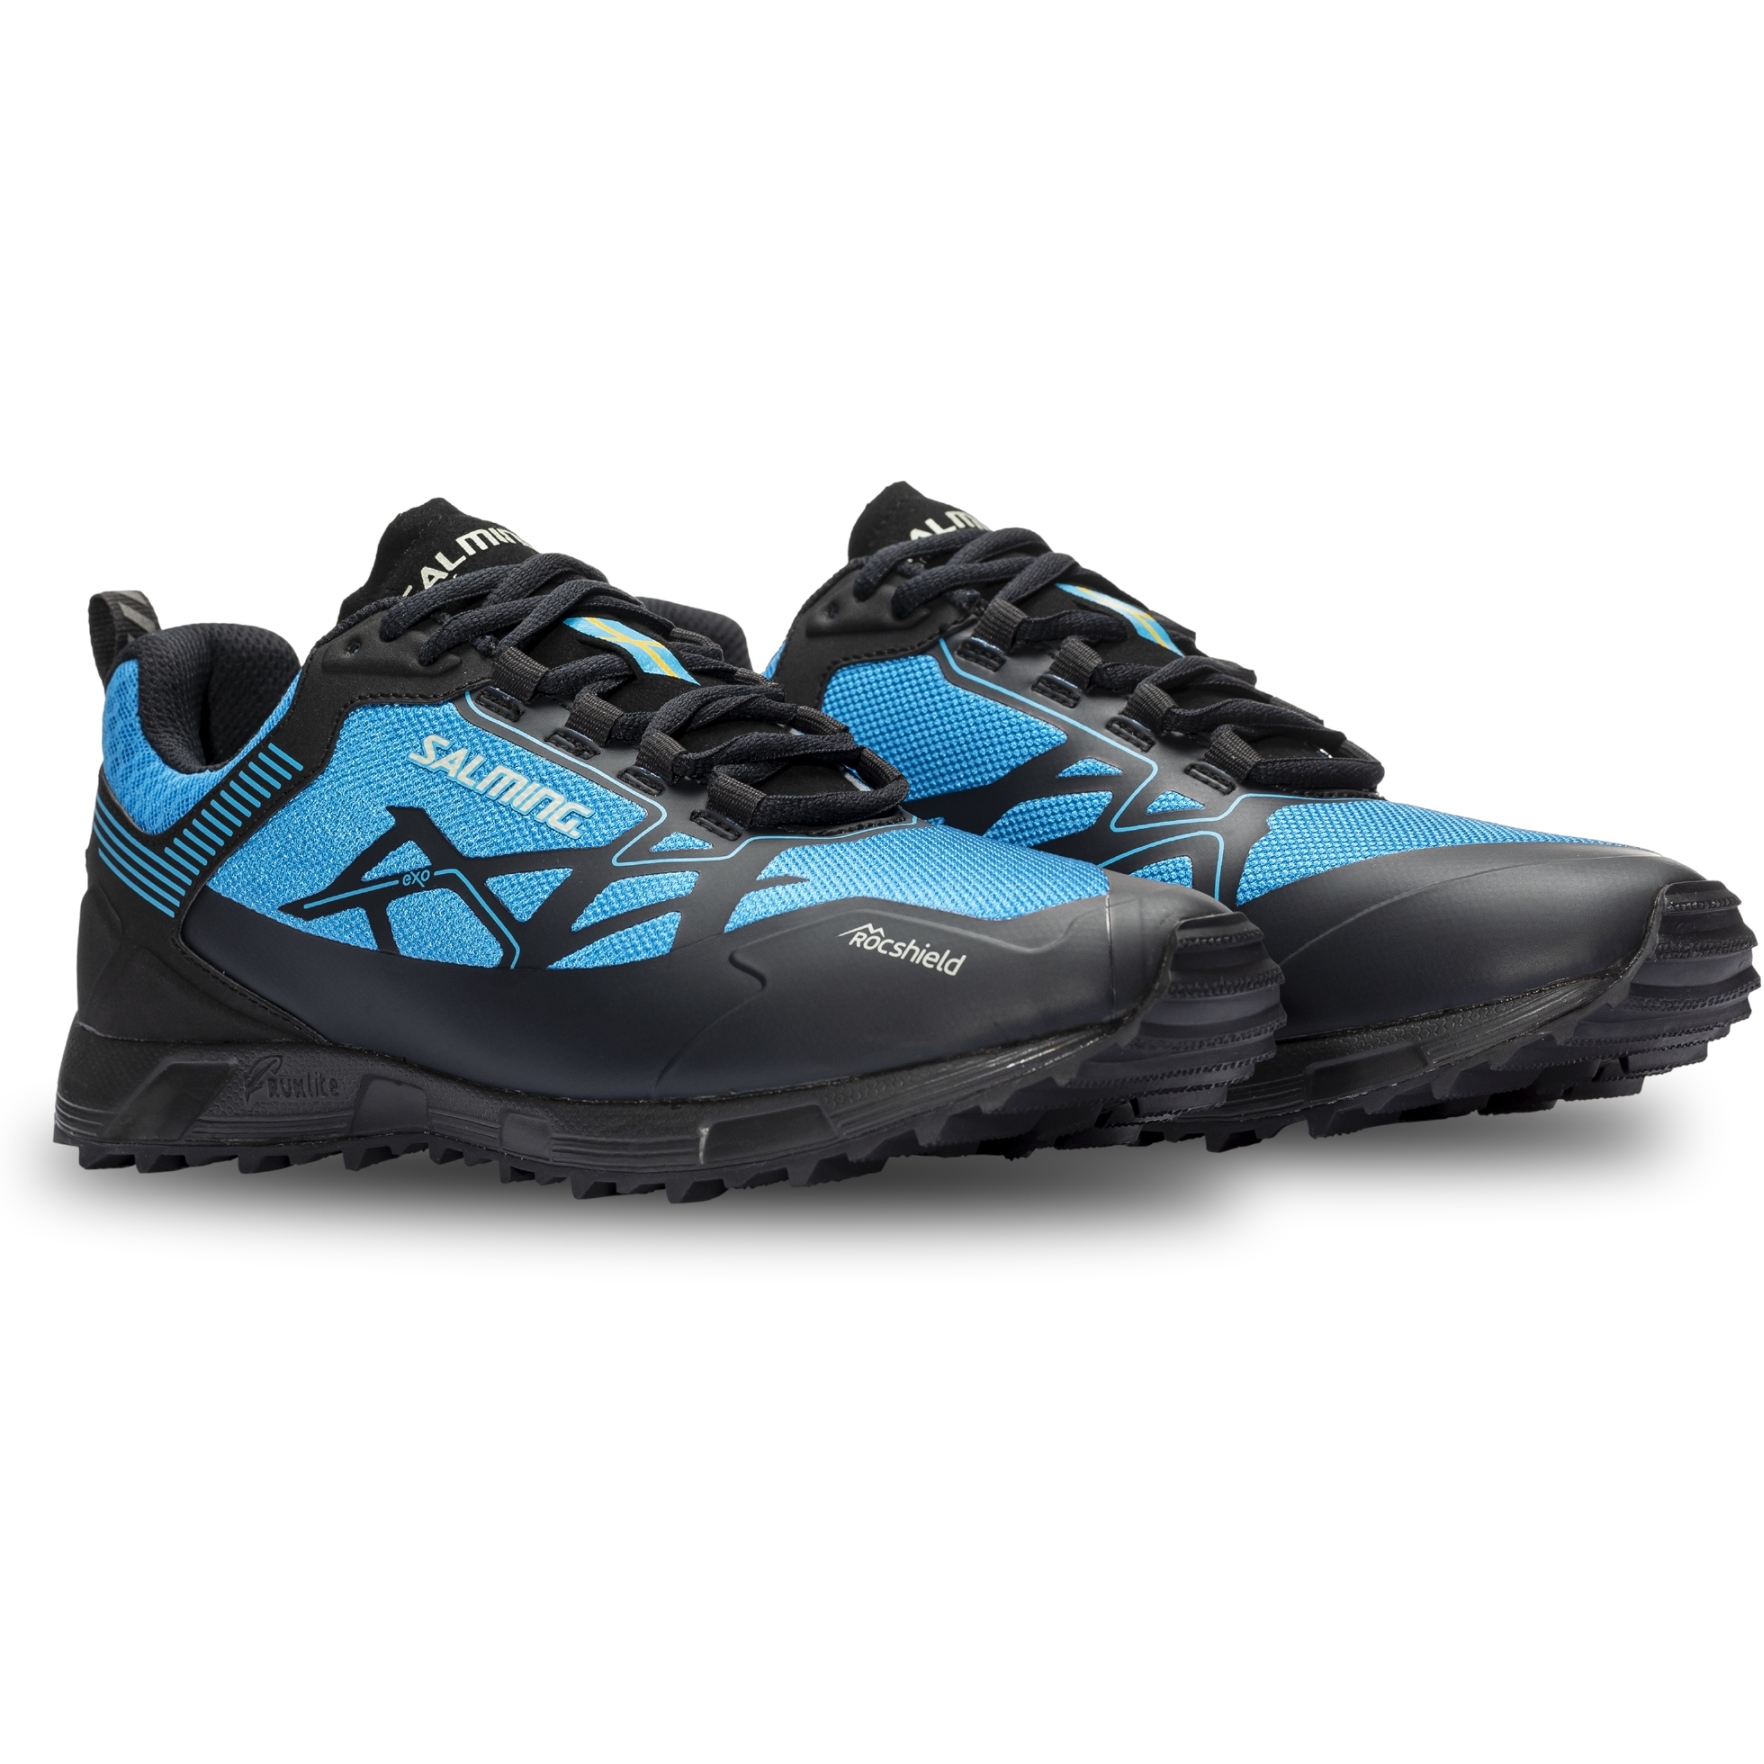 Produktbild von Salming Ranger Damen Trail Running Schuhe - dark grey/spring blue